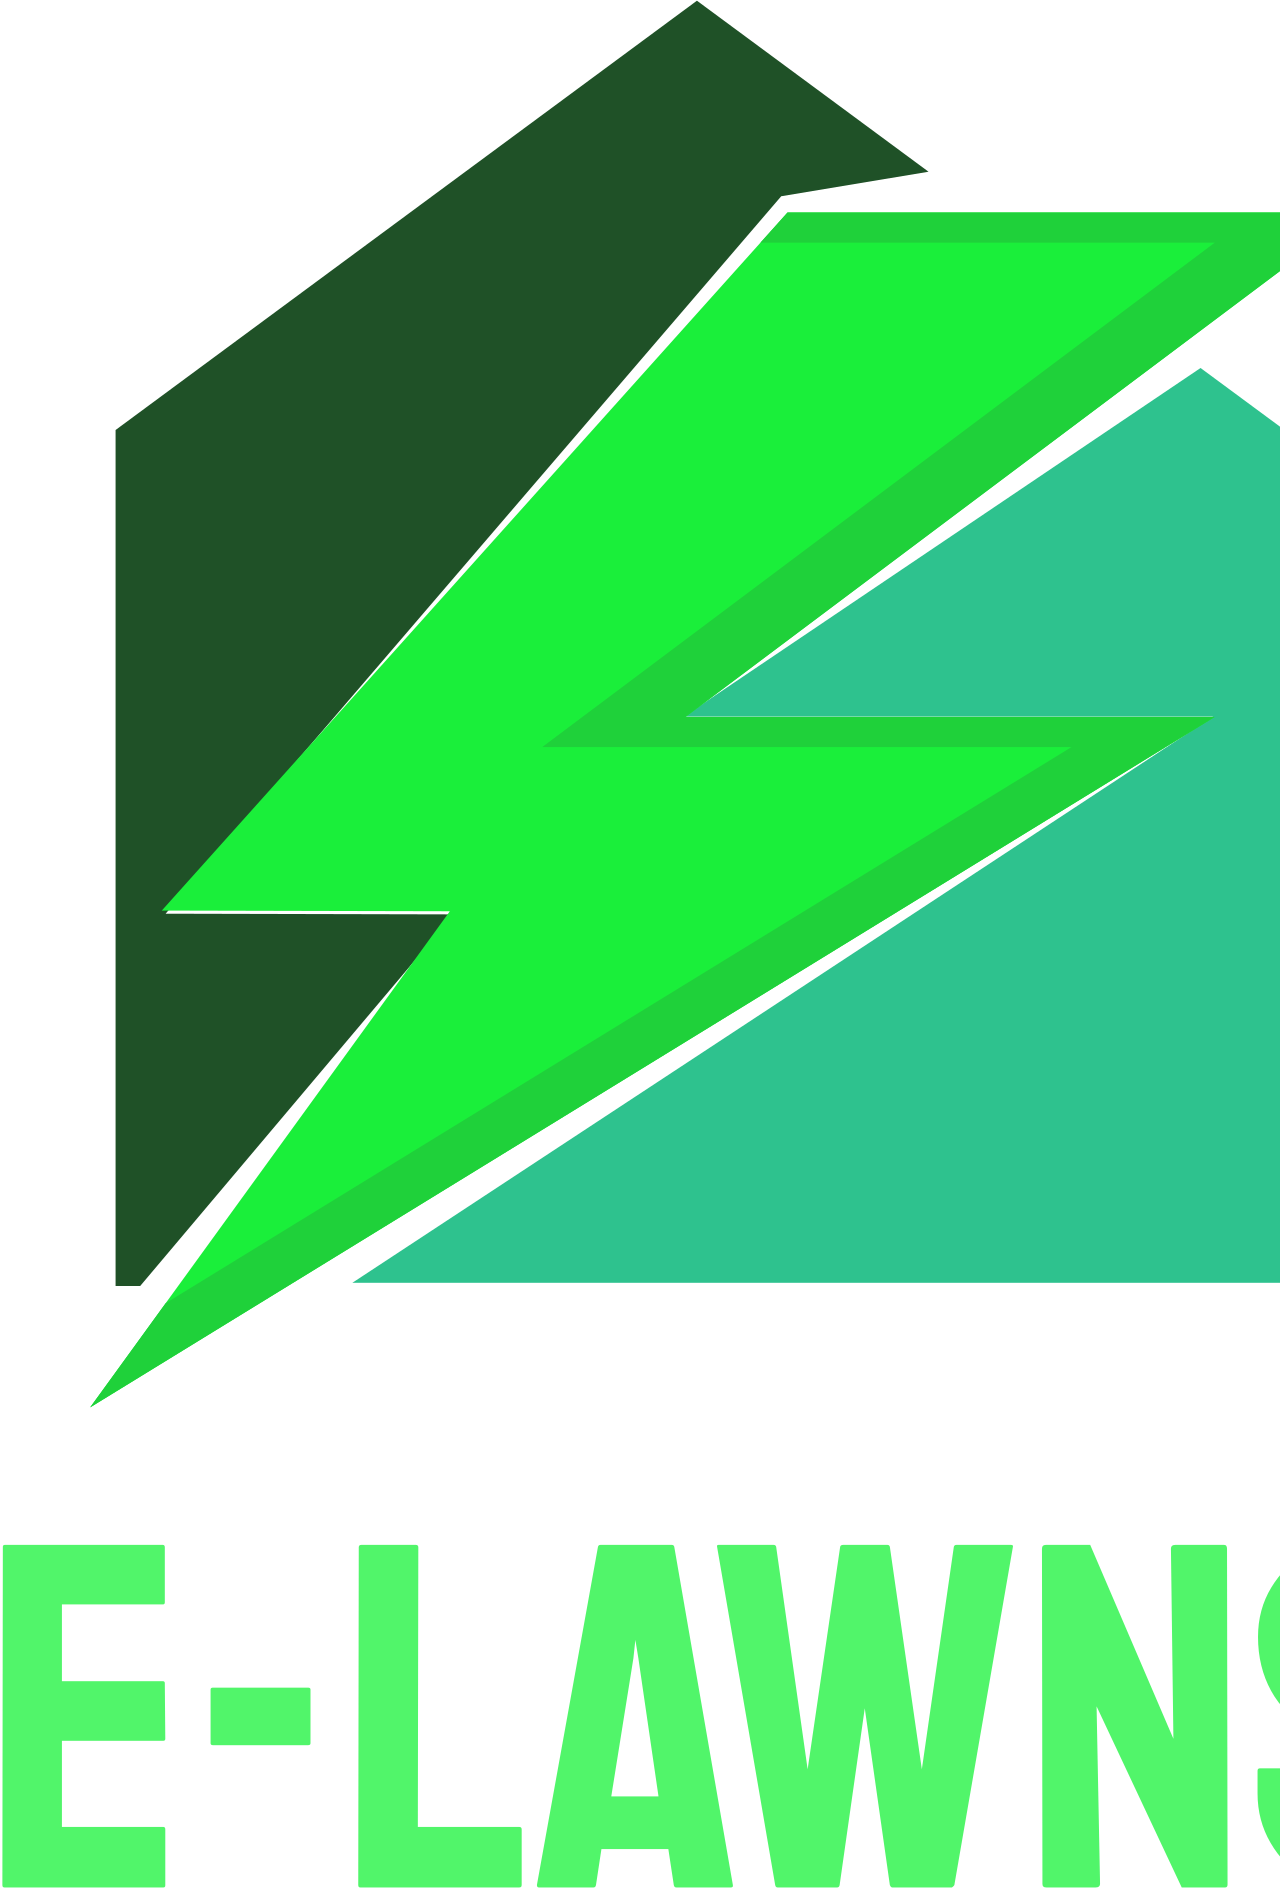 E-Lawns's web page